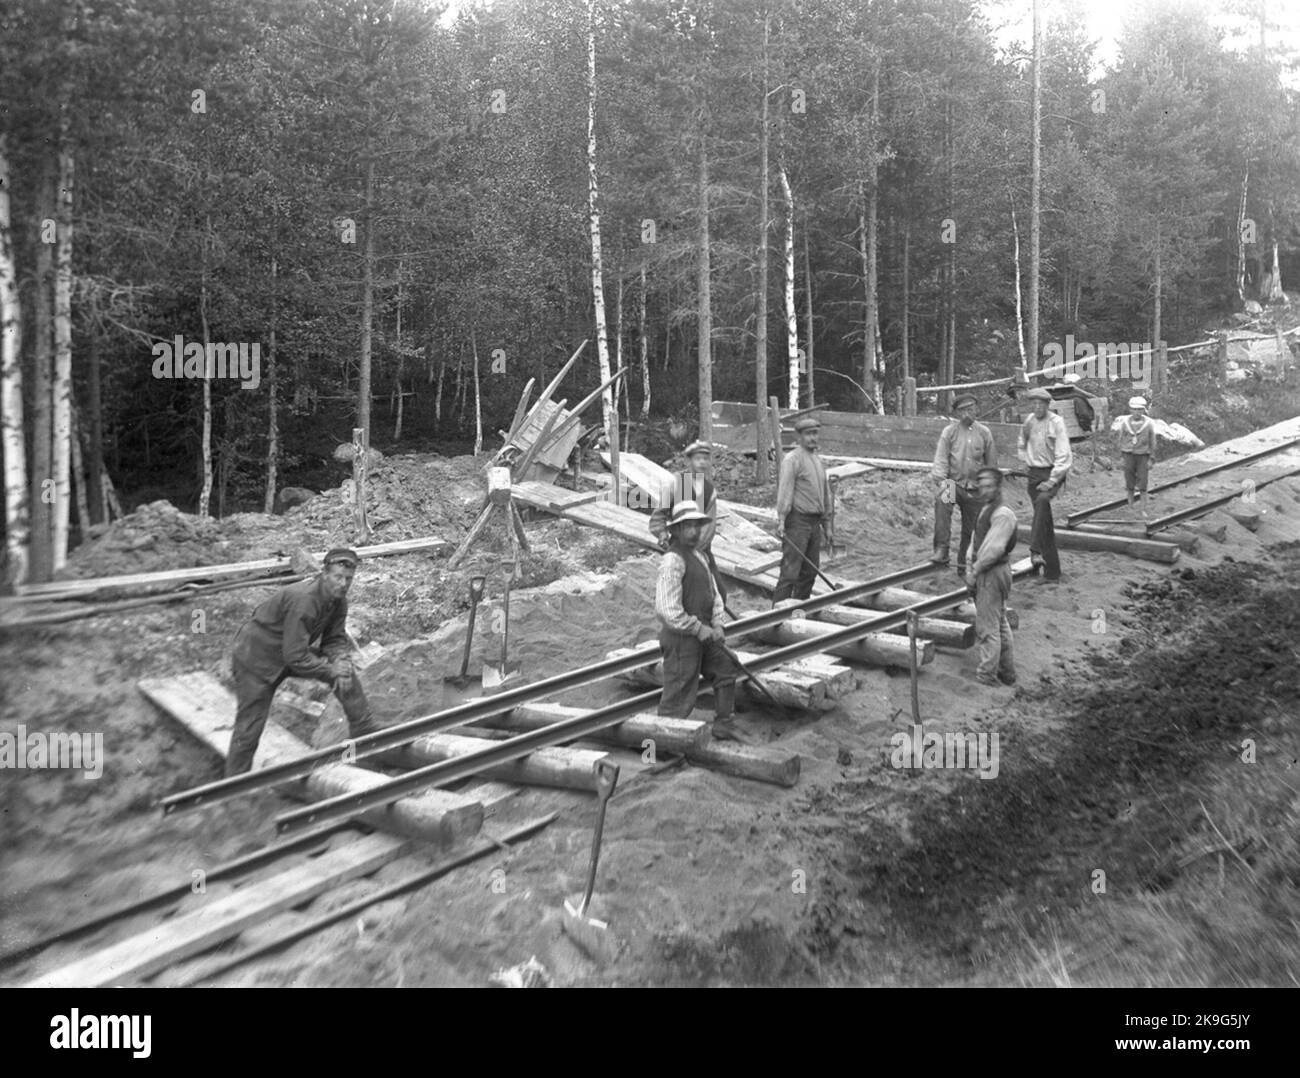 Voxna - Lobonäs Railway, WLJ. Track work between km. 20-21. Stock Photo